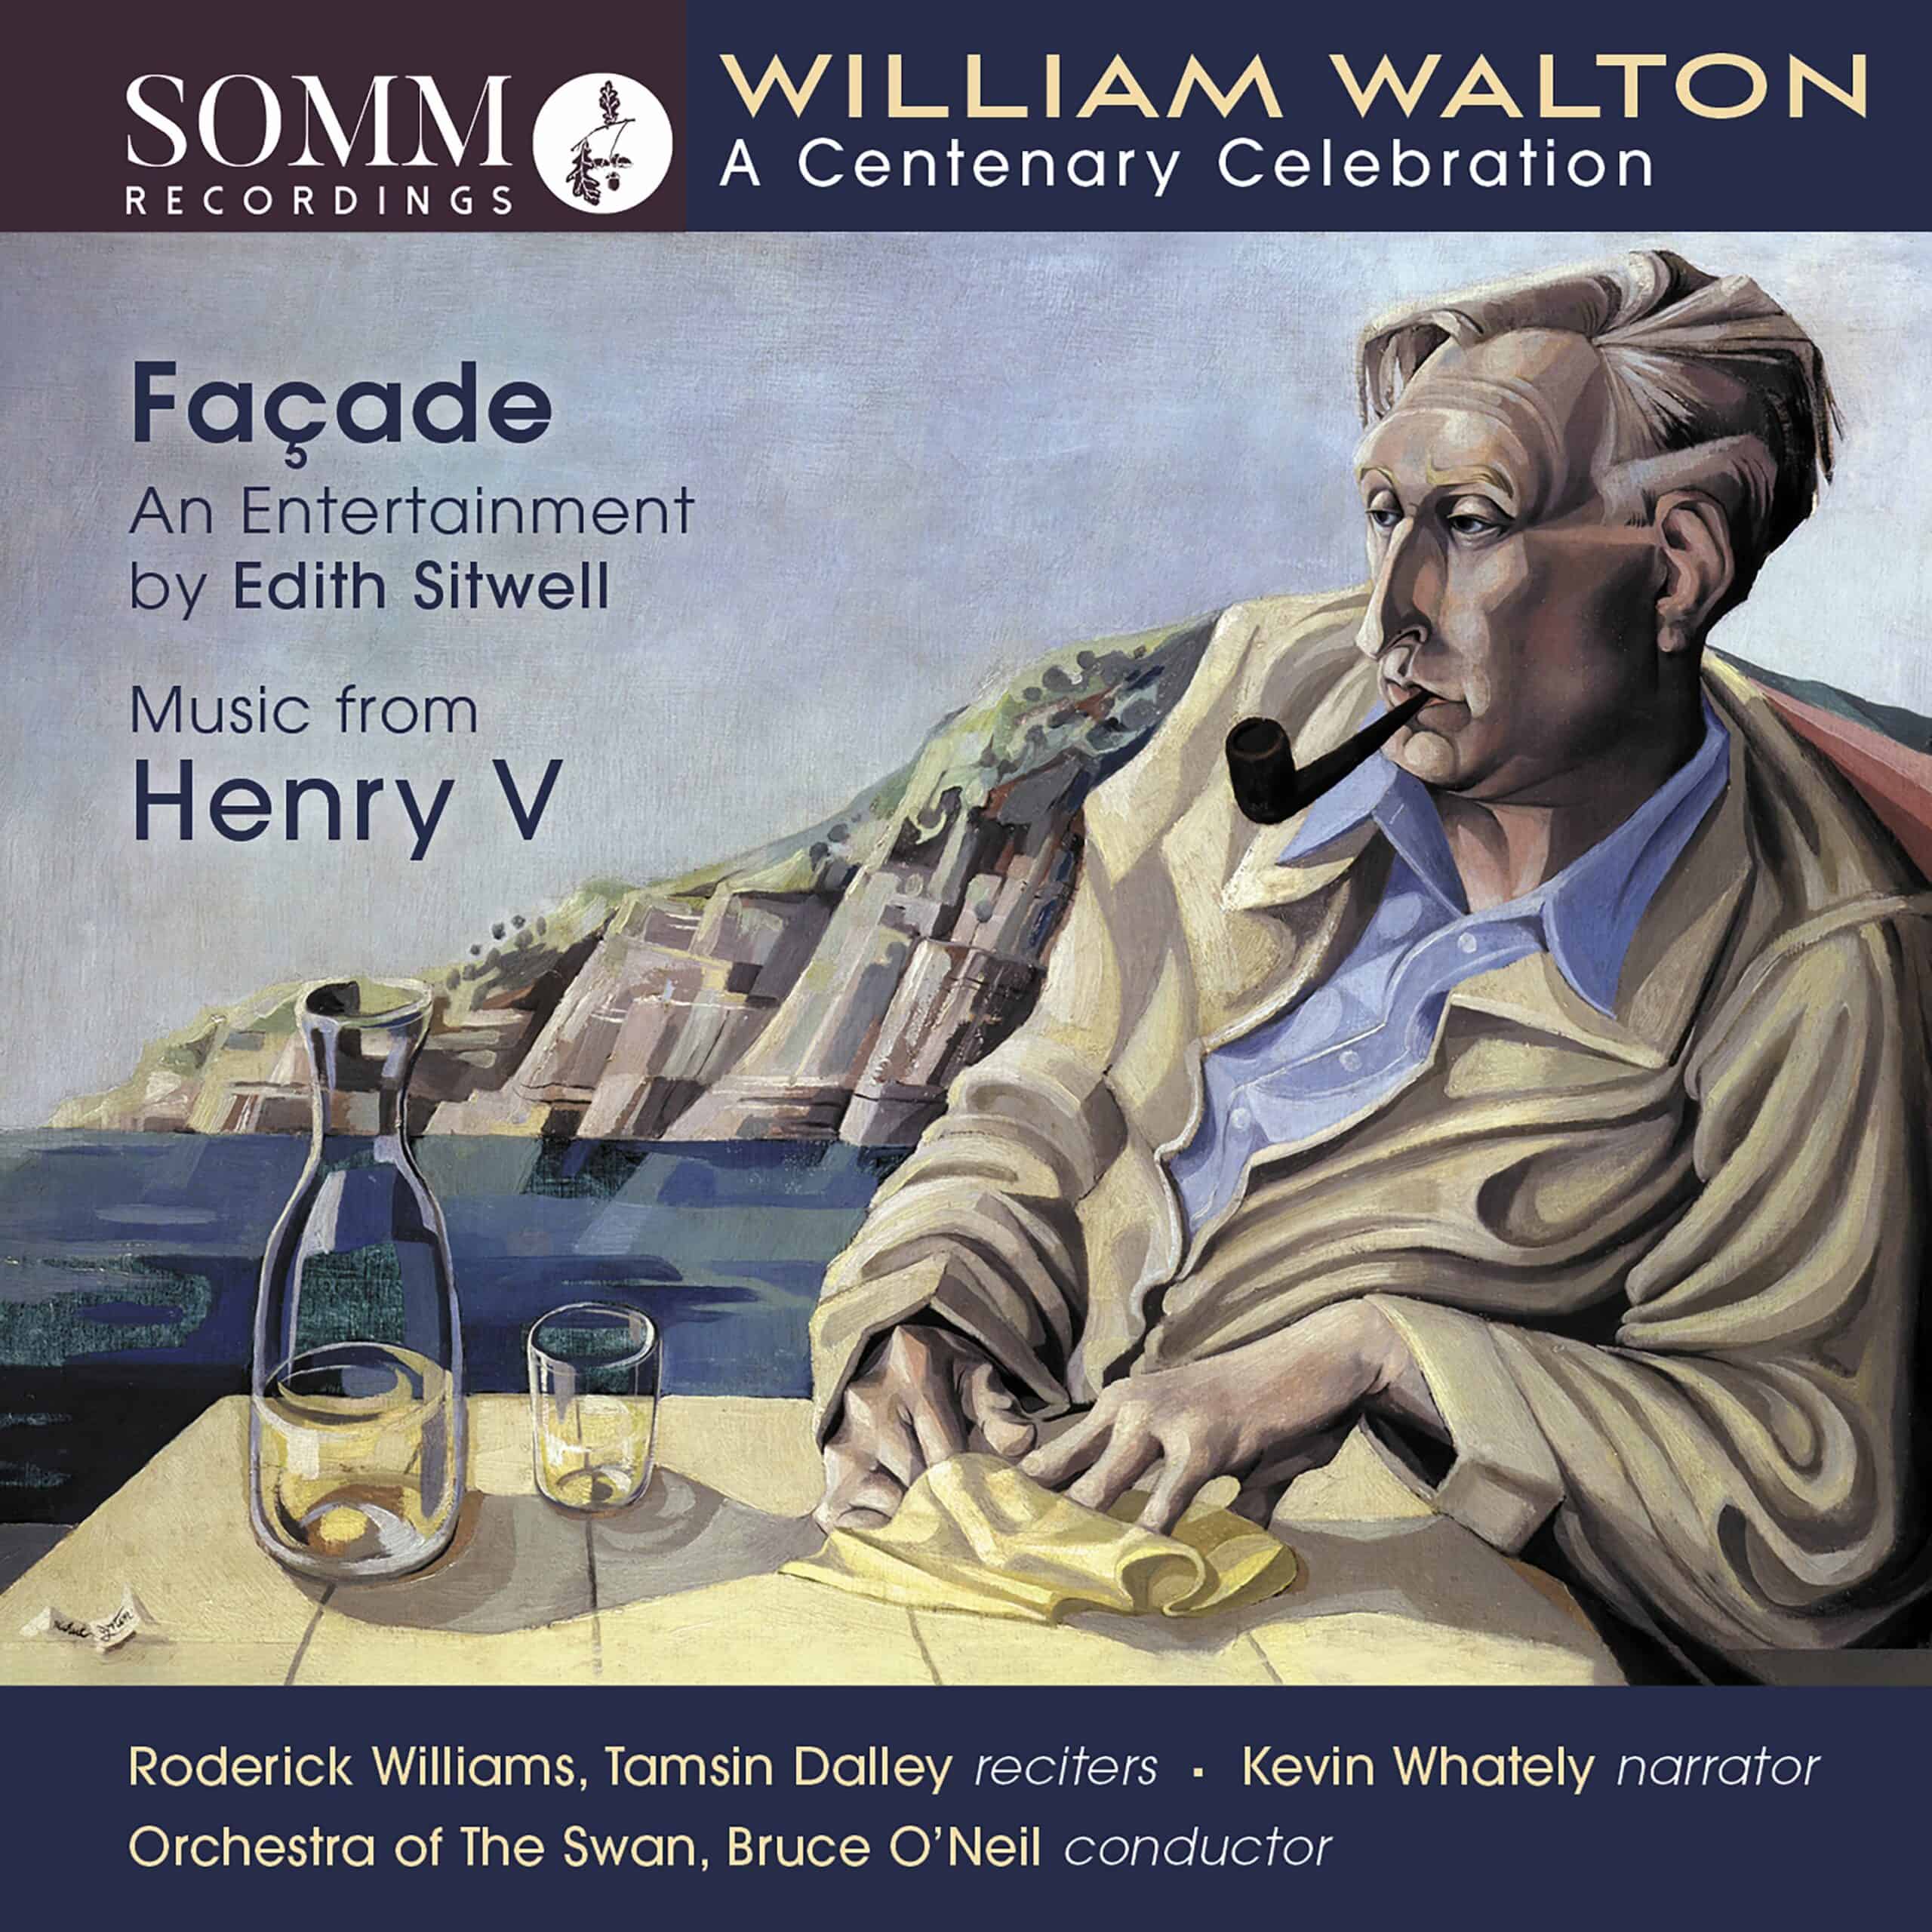 William Walton: A Centenary Celebration